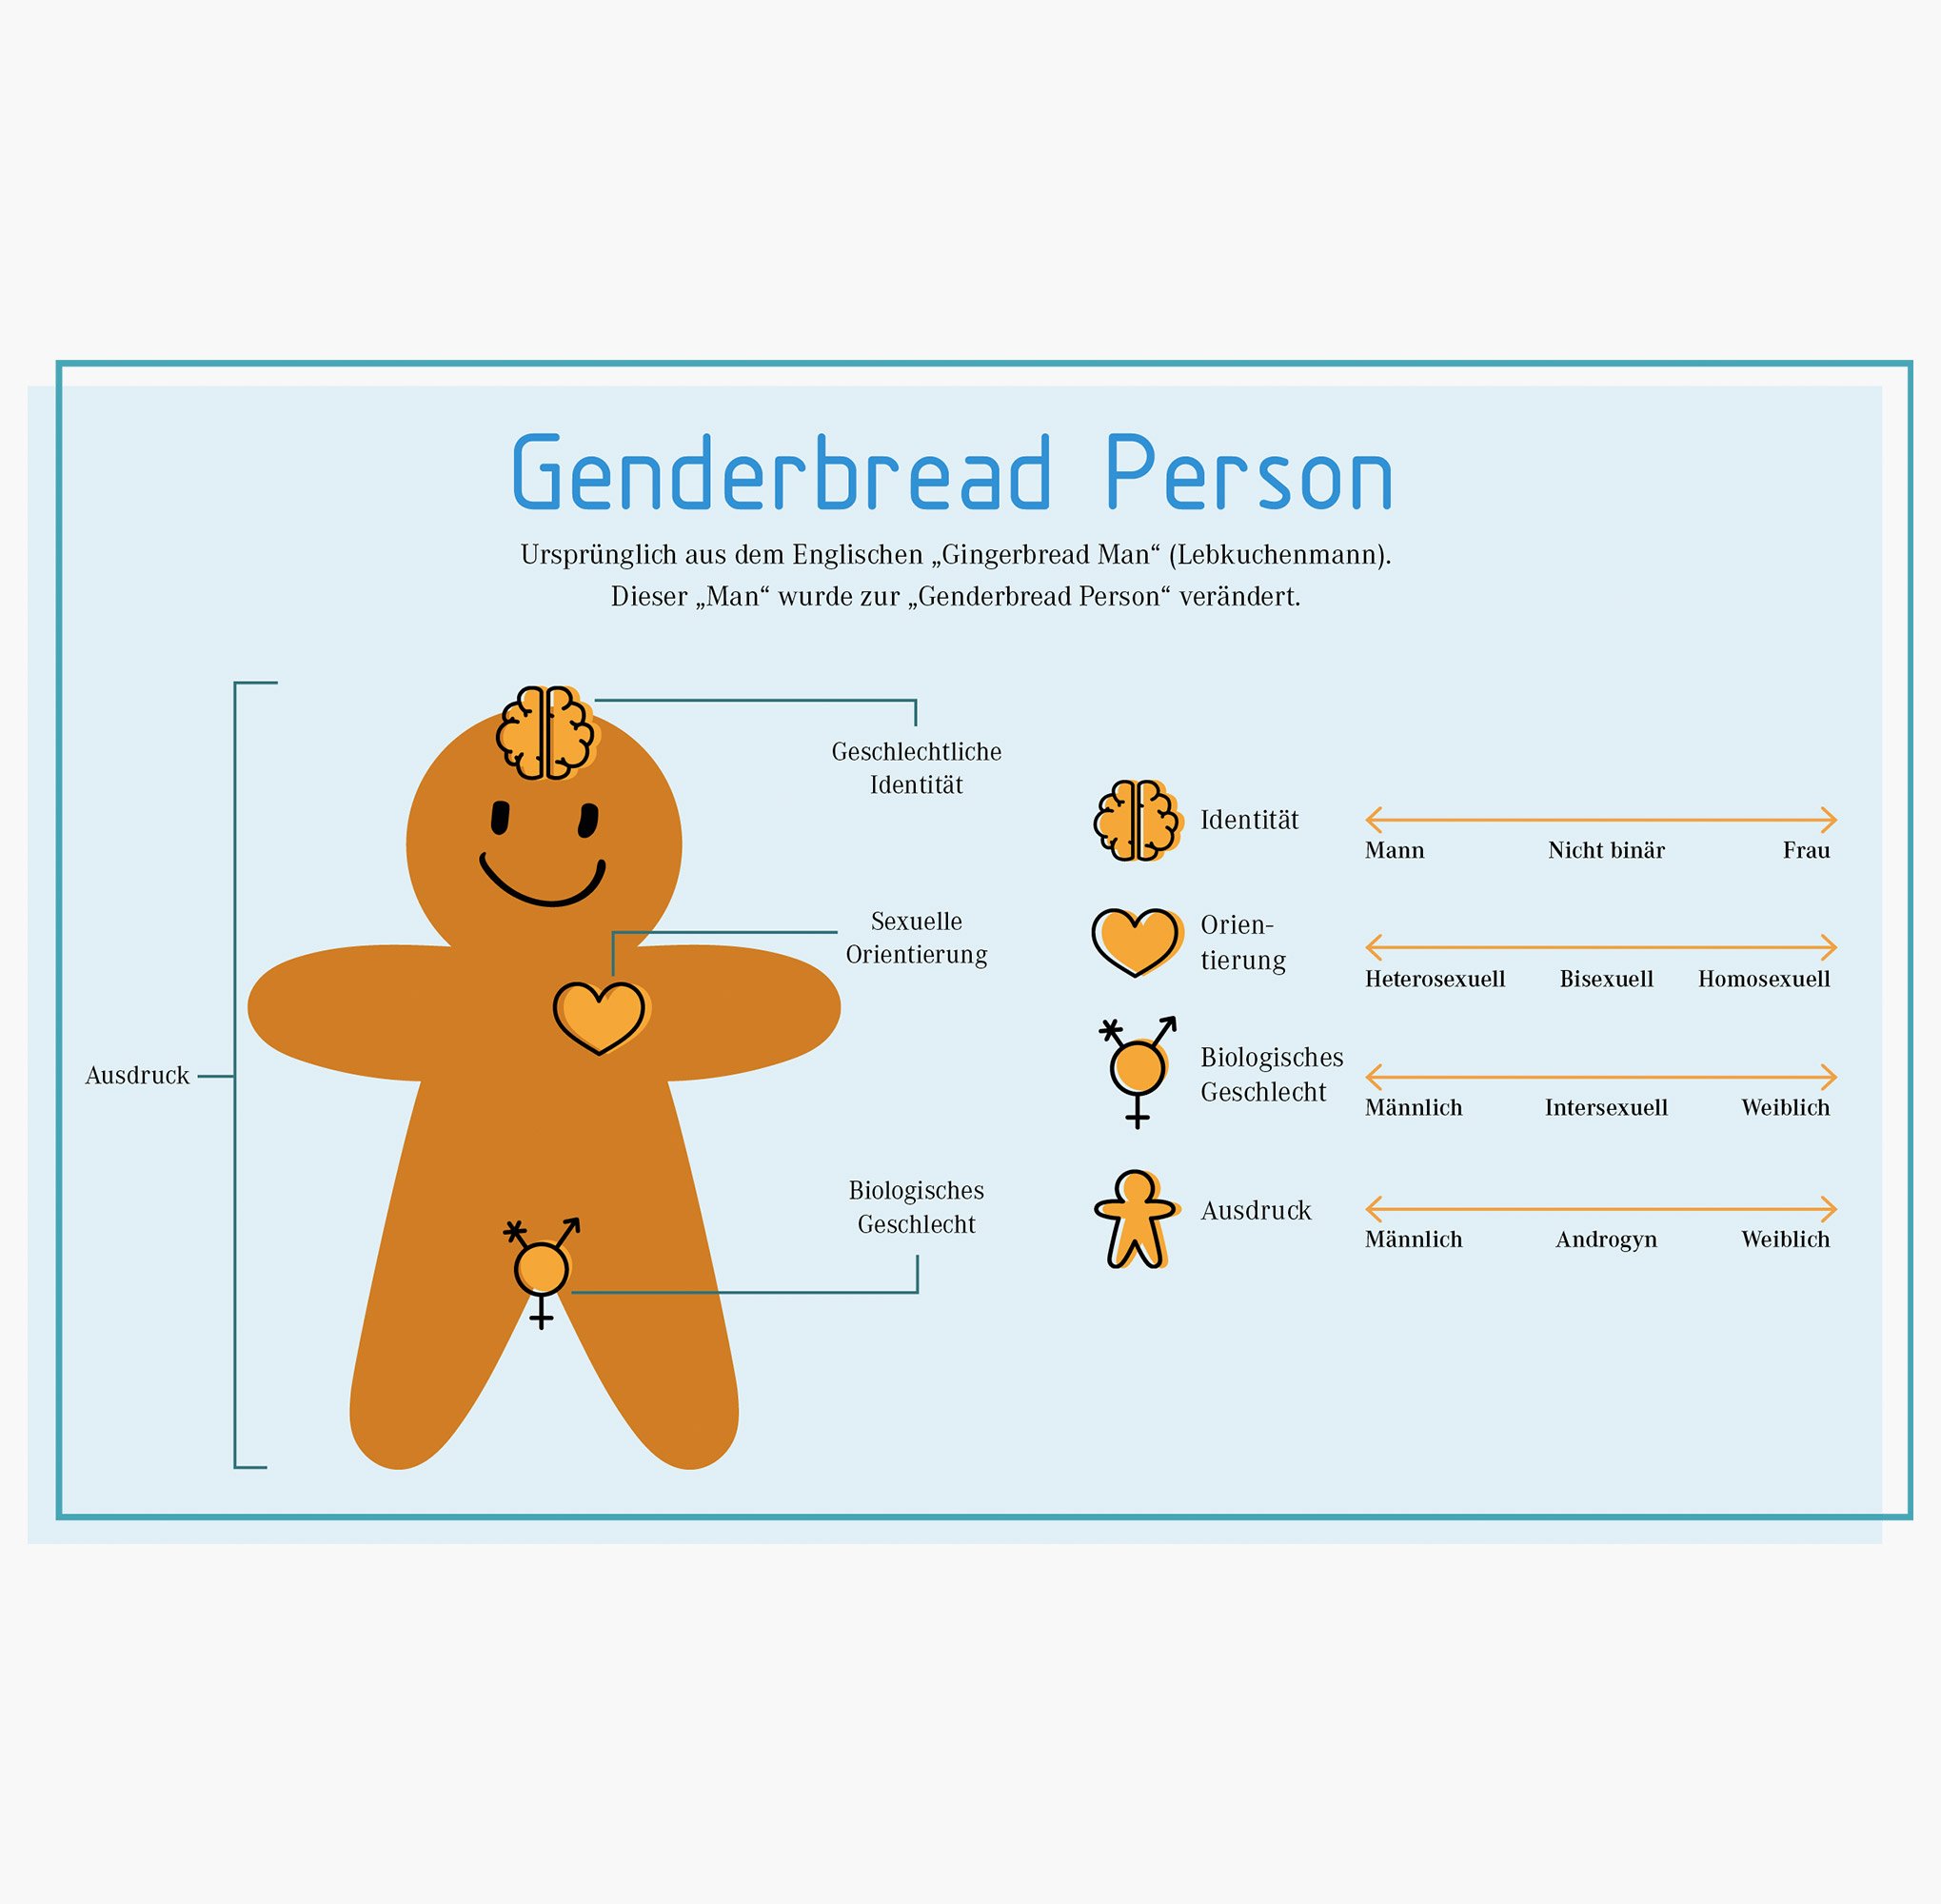 VDI_Genderbread.jpg